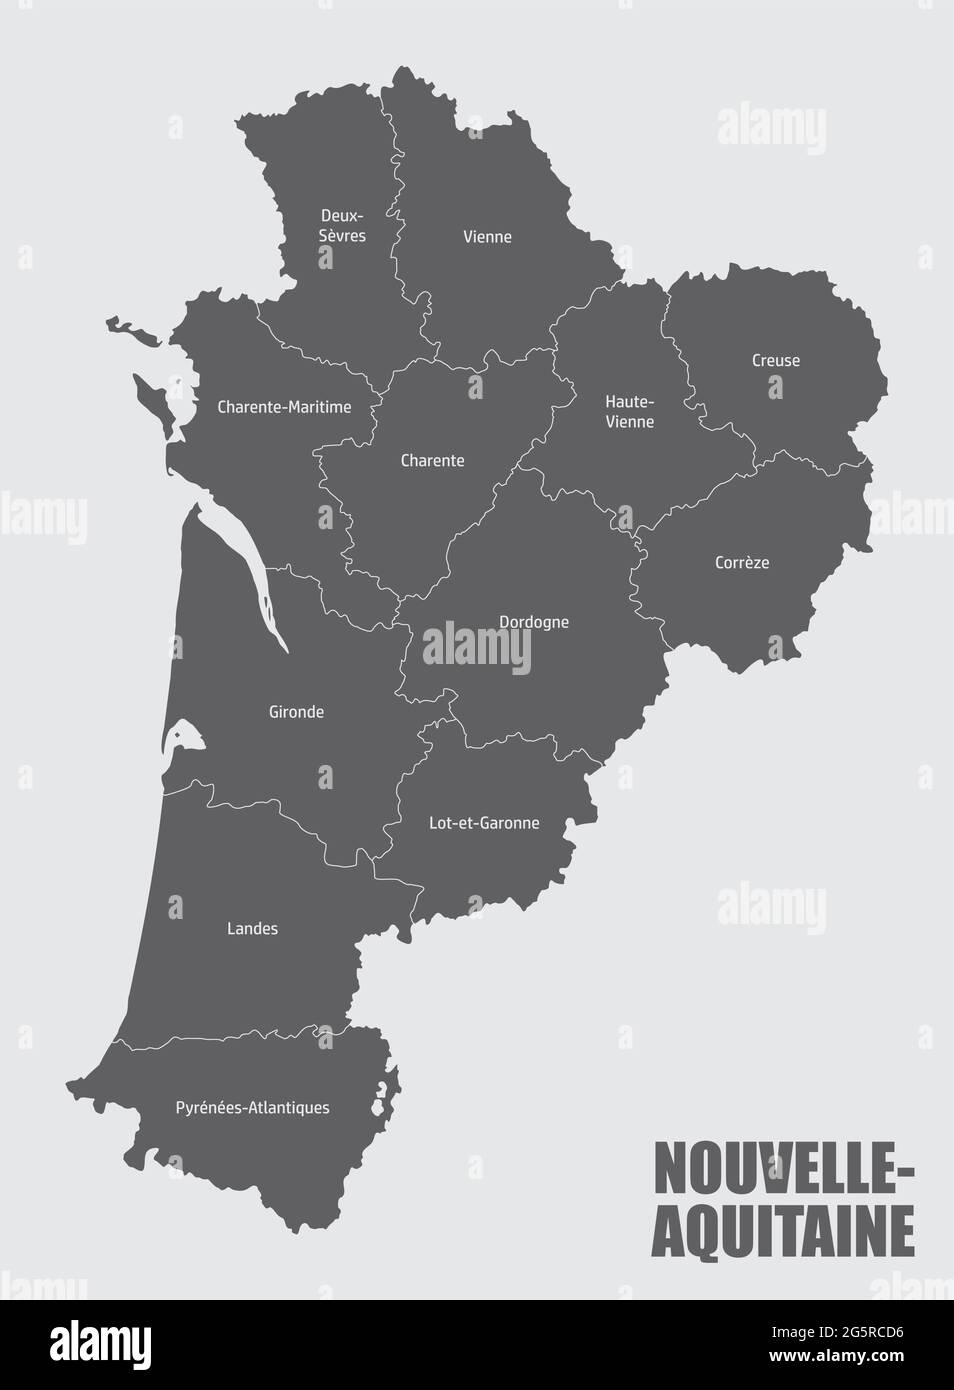 Nouvelle-Aquitaine carte administrative divisée en départements avec labels, France Illustration de Vecteur